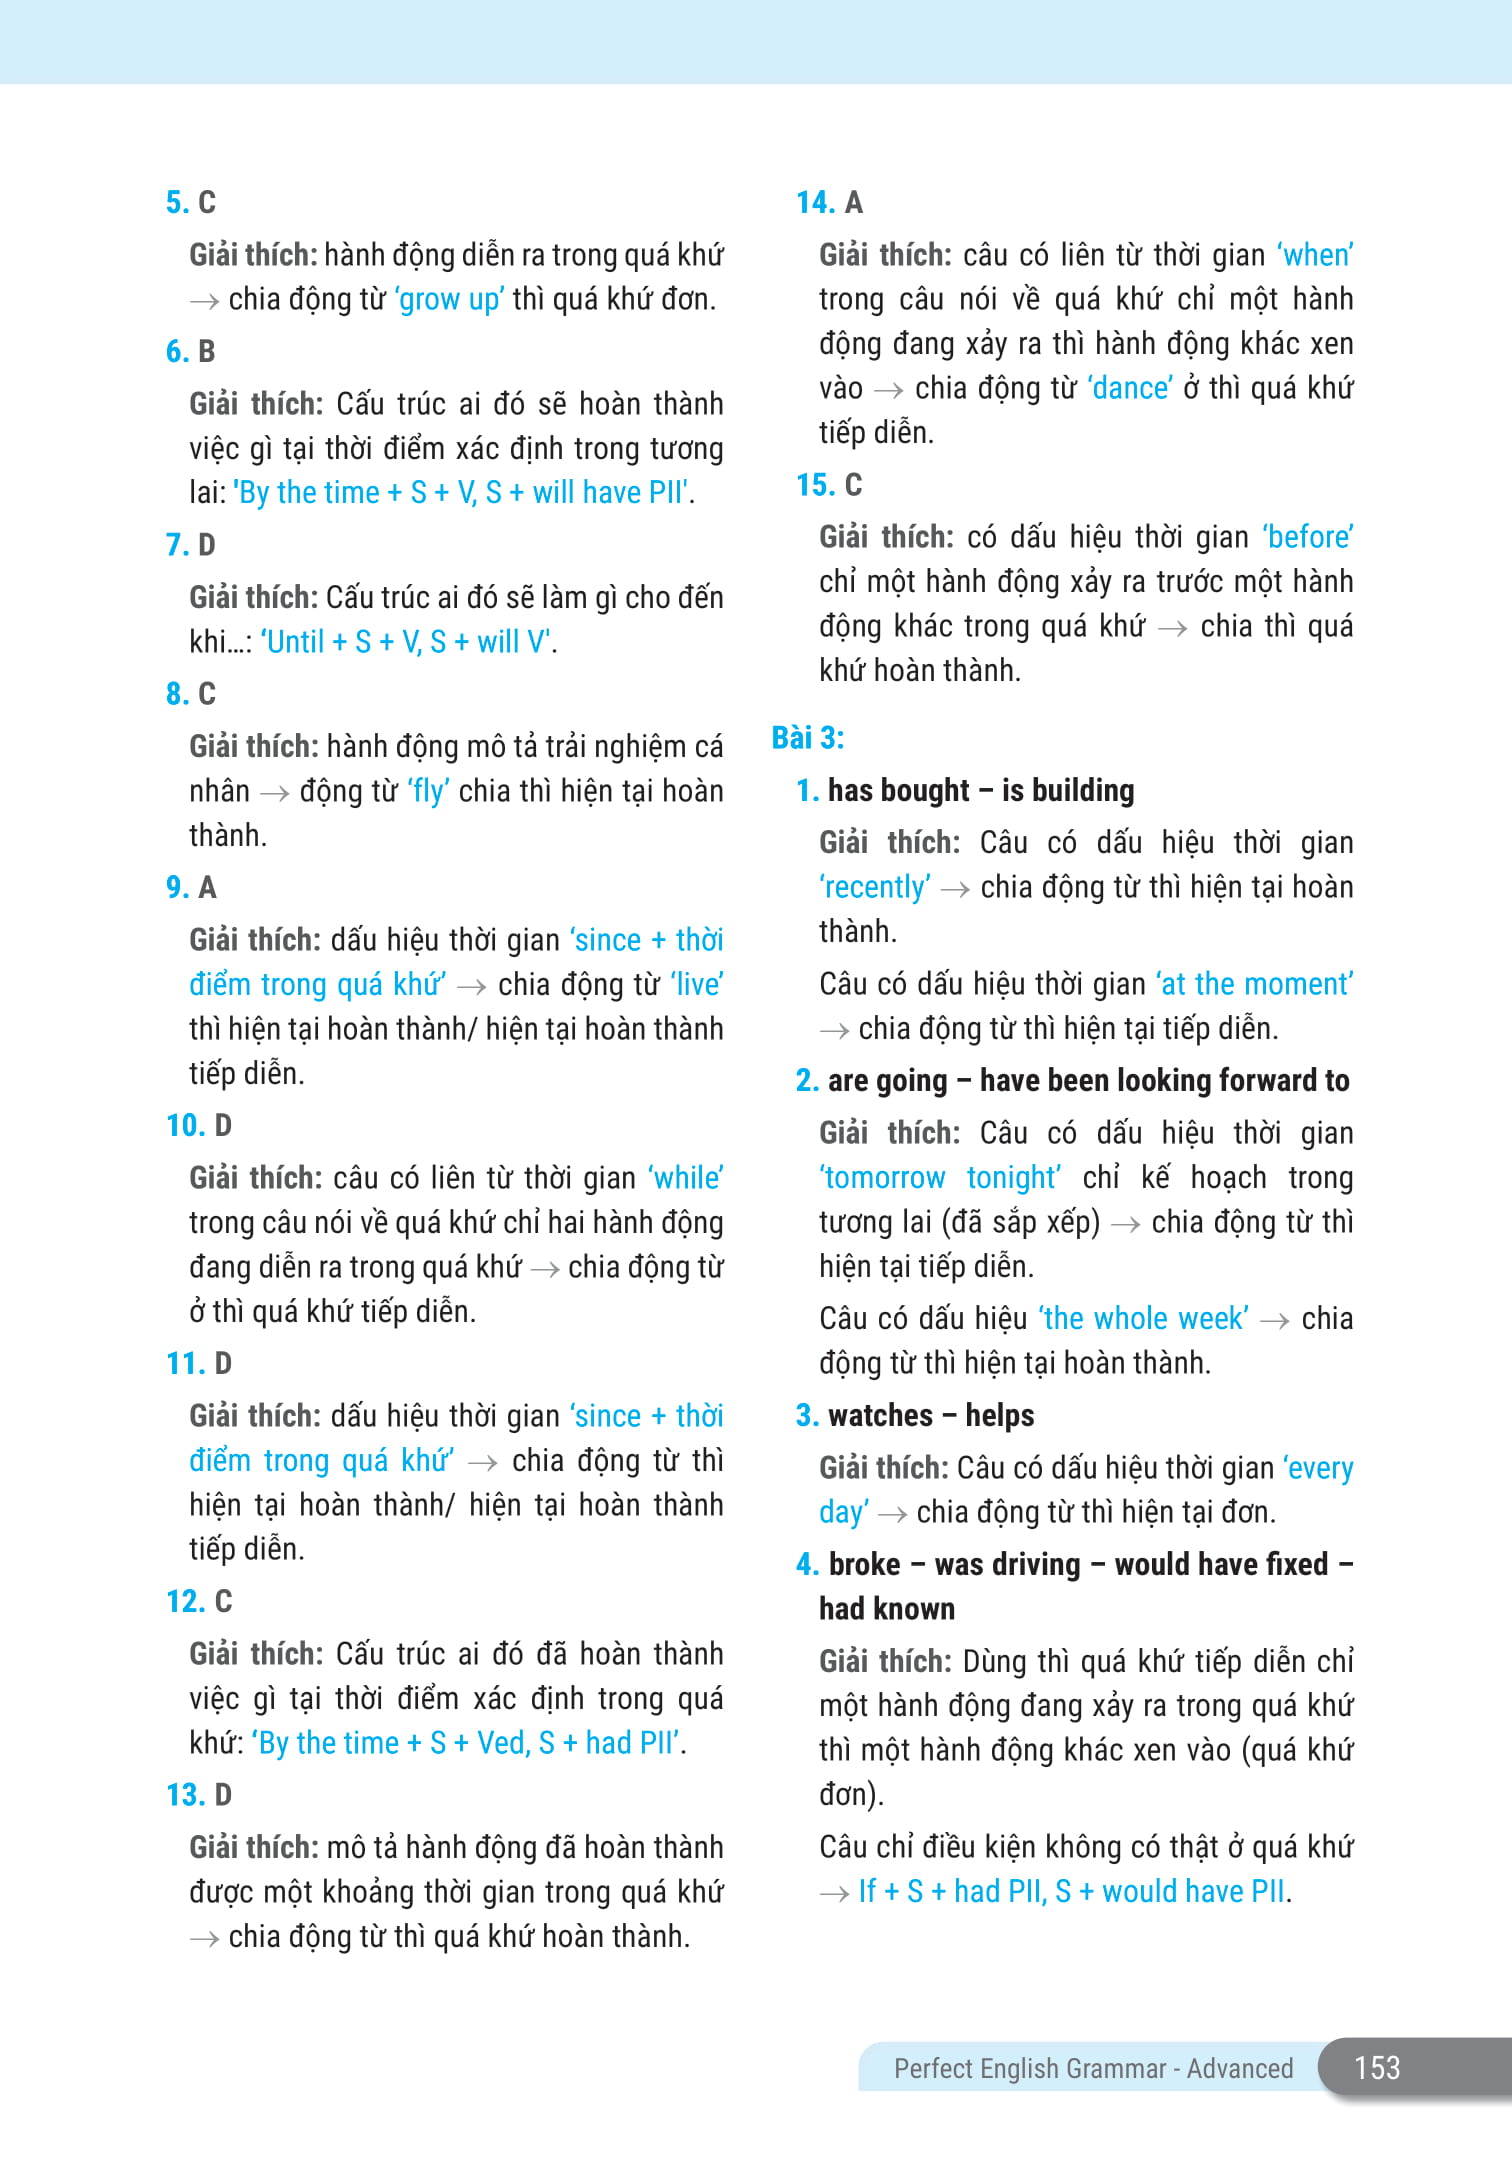 Perfect English Grammar - Cẩm Nang Tự Học Toàn Diện Ngữ Pháp Tiếng Anh - Advanced PDF